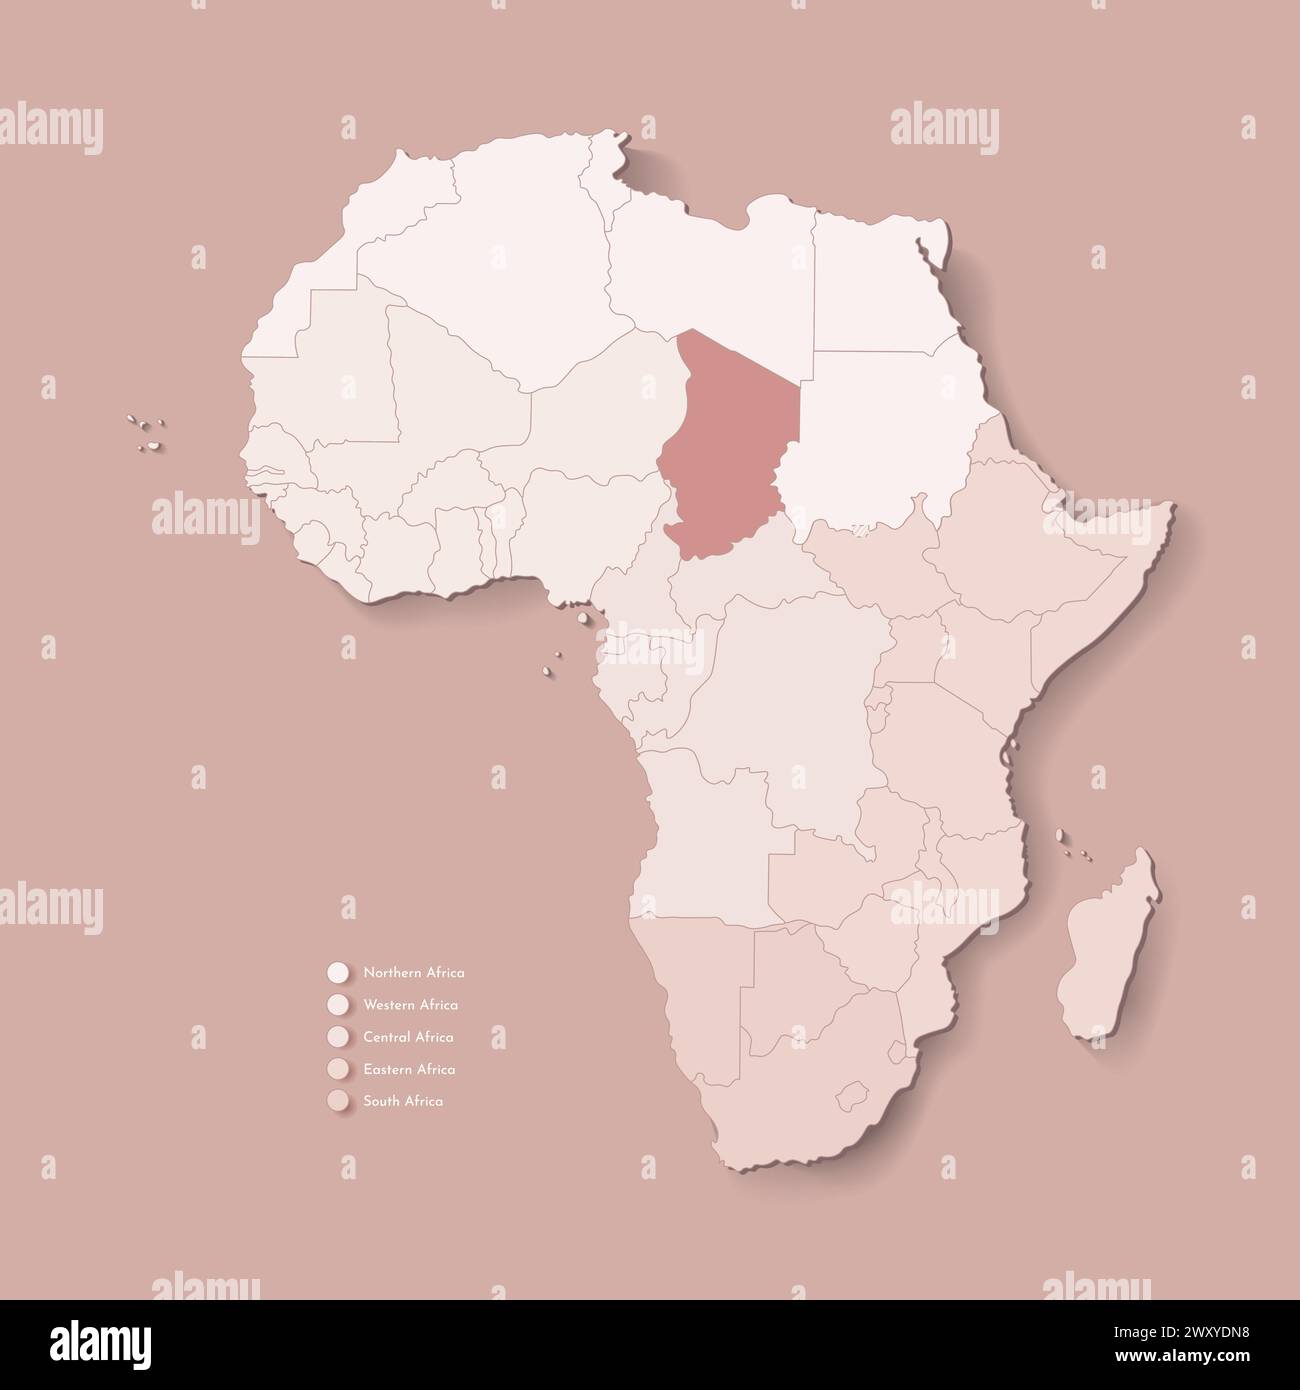 Illustrazione vettoriale con continente africano con confini di tutti gli stati e paese segnato Ciad. Mappa politica di colore marrone con occidentale, sud ed e. Illustrazione Vettoriale